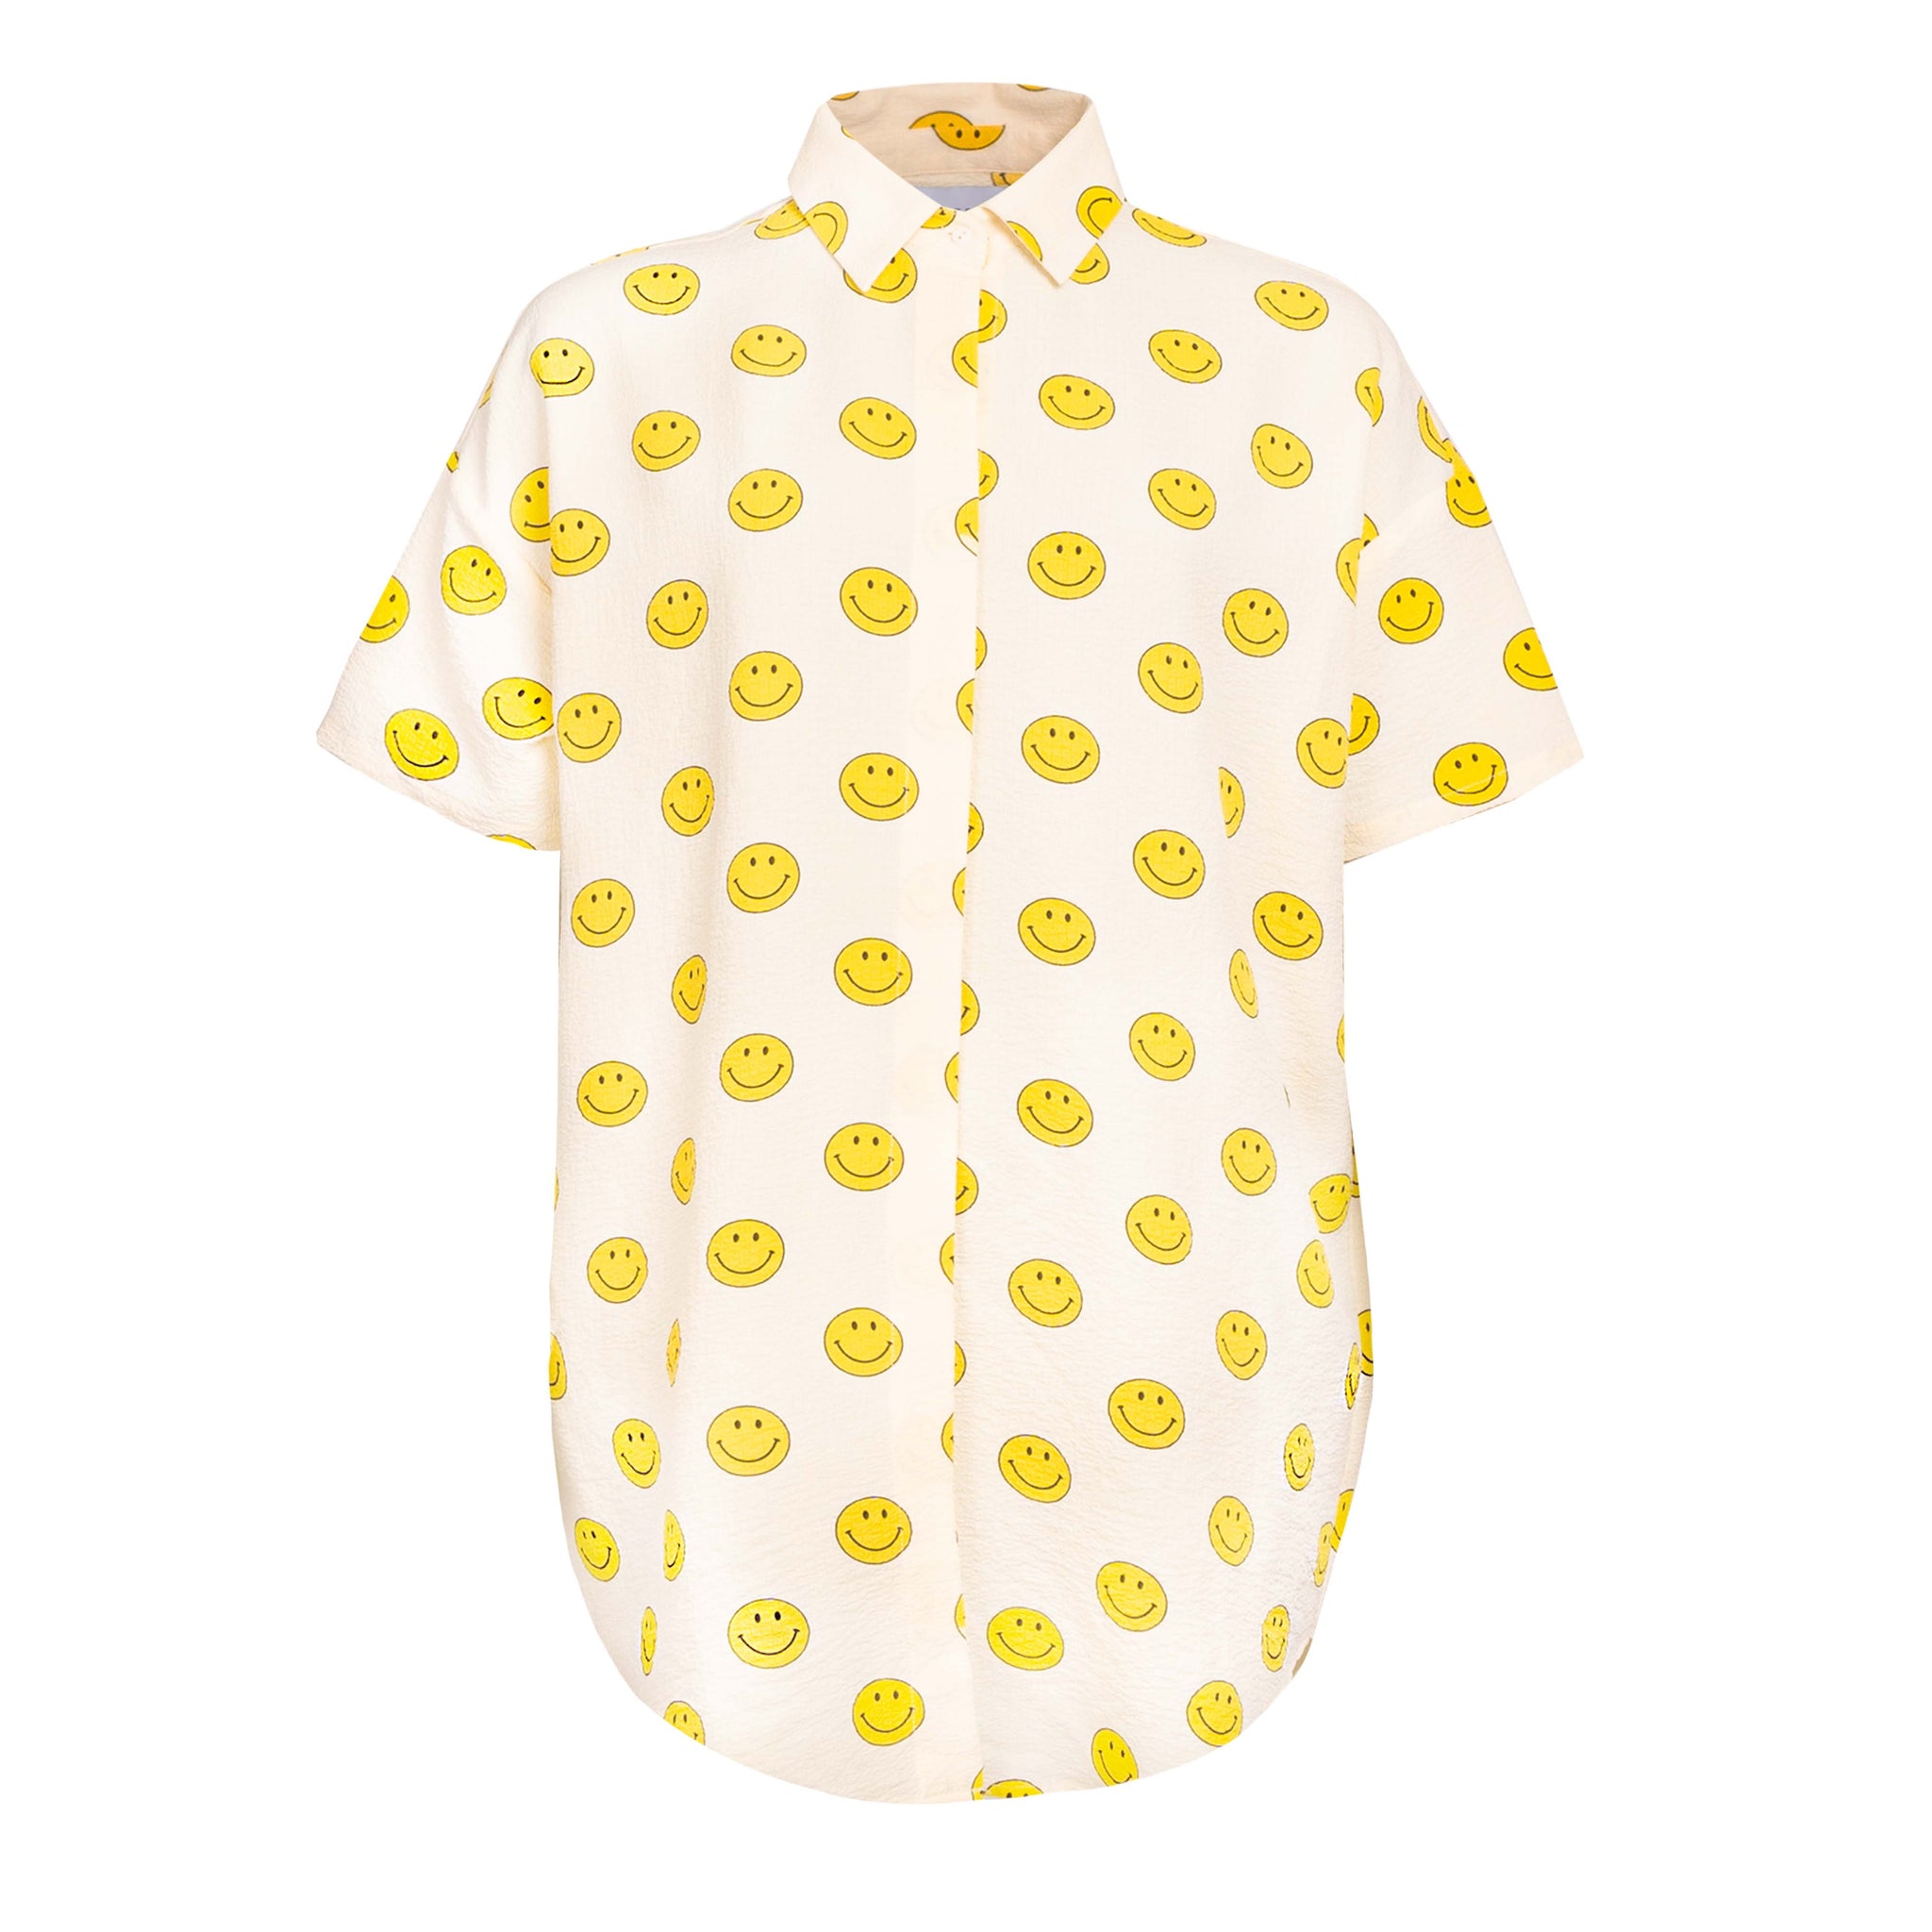 Liberté - Sara SS Shirt, 21250 - Yellow Smiley